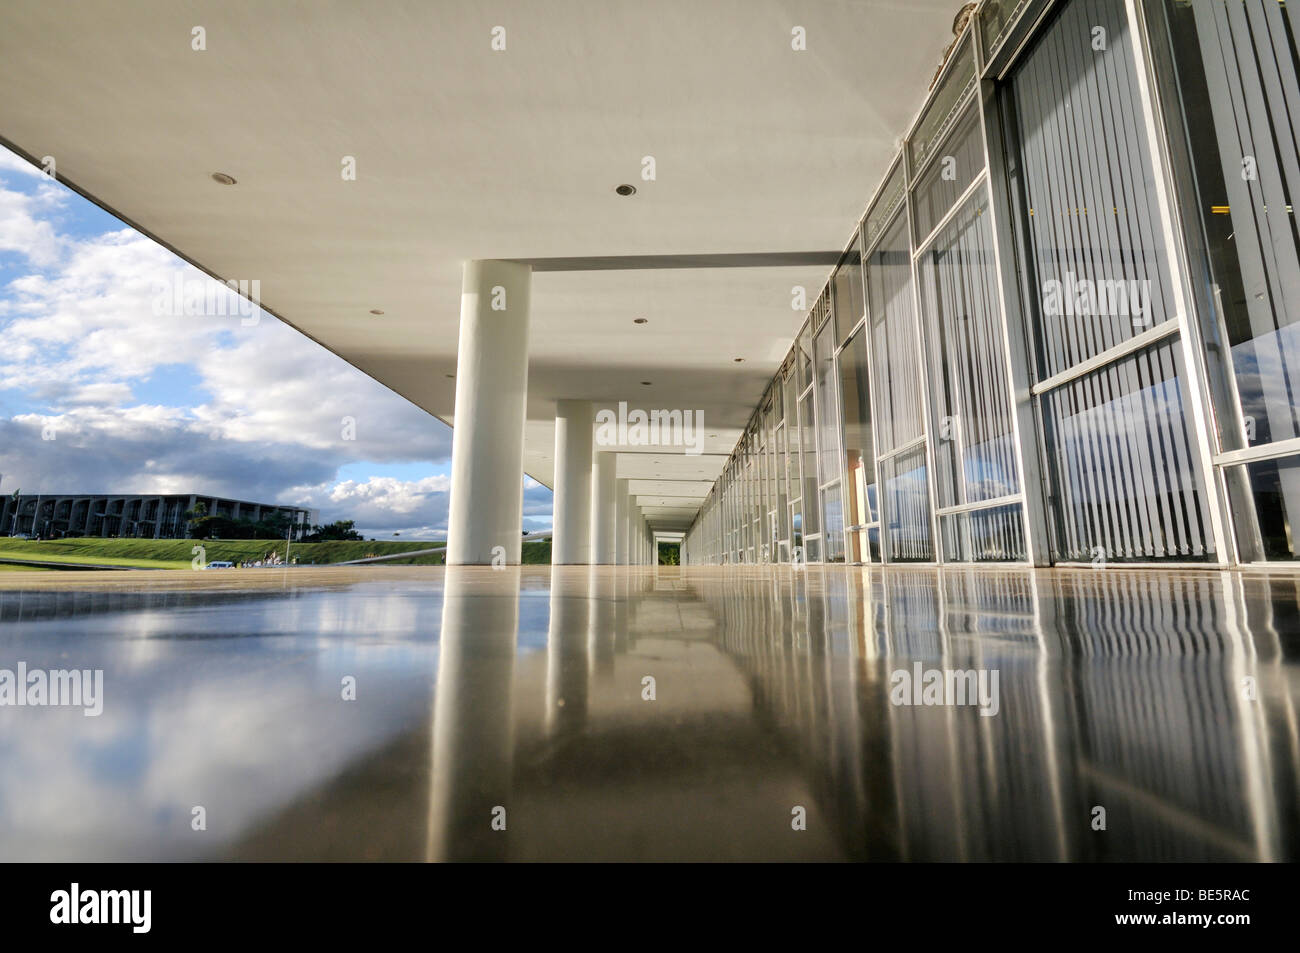 Arcade in the Congresso Nacional Congress building, architect Oscar Niemeyer, Brasilia, Distrito Federal state, Brazil, South A Stock Photo